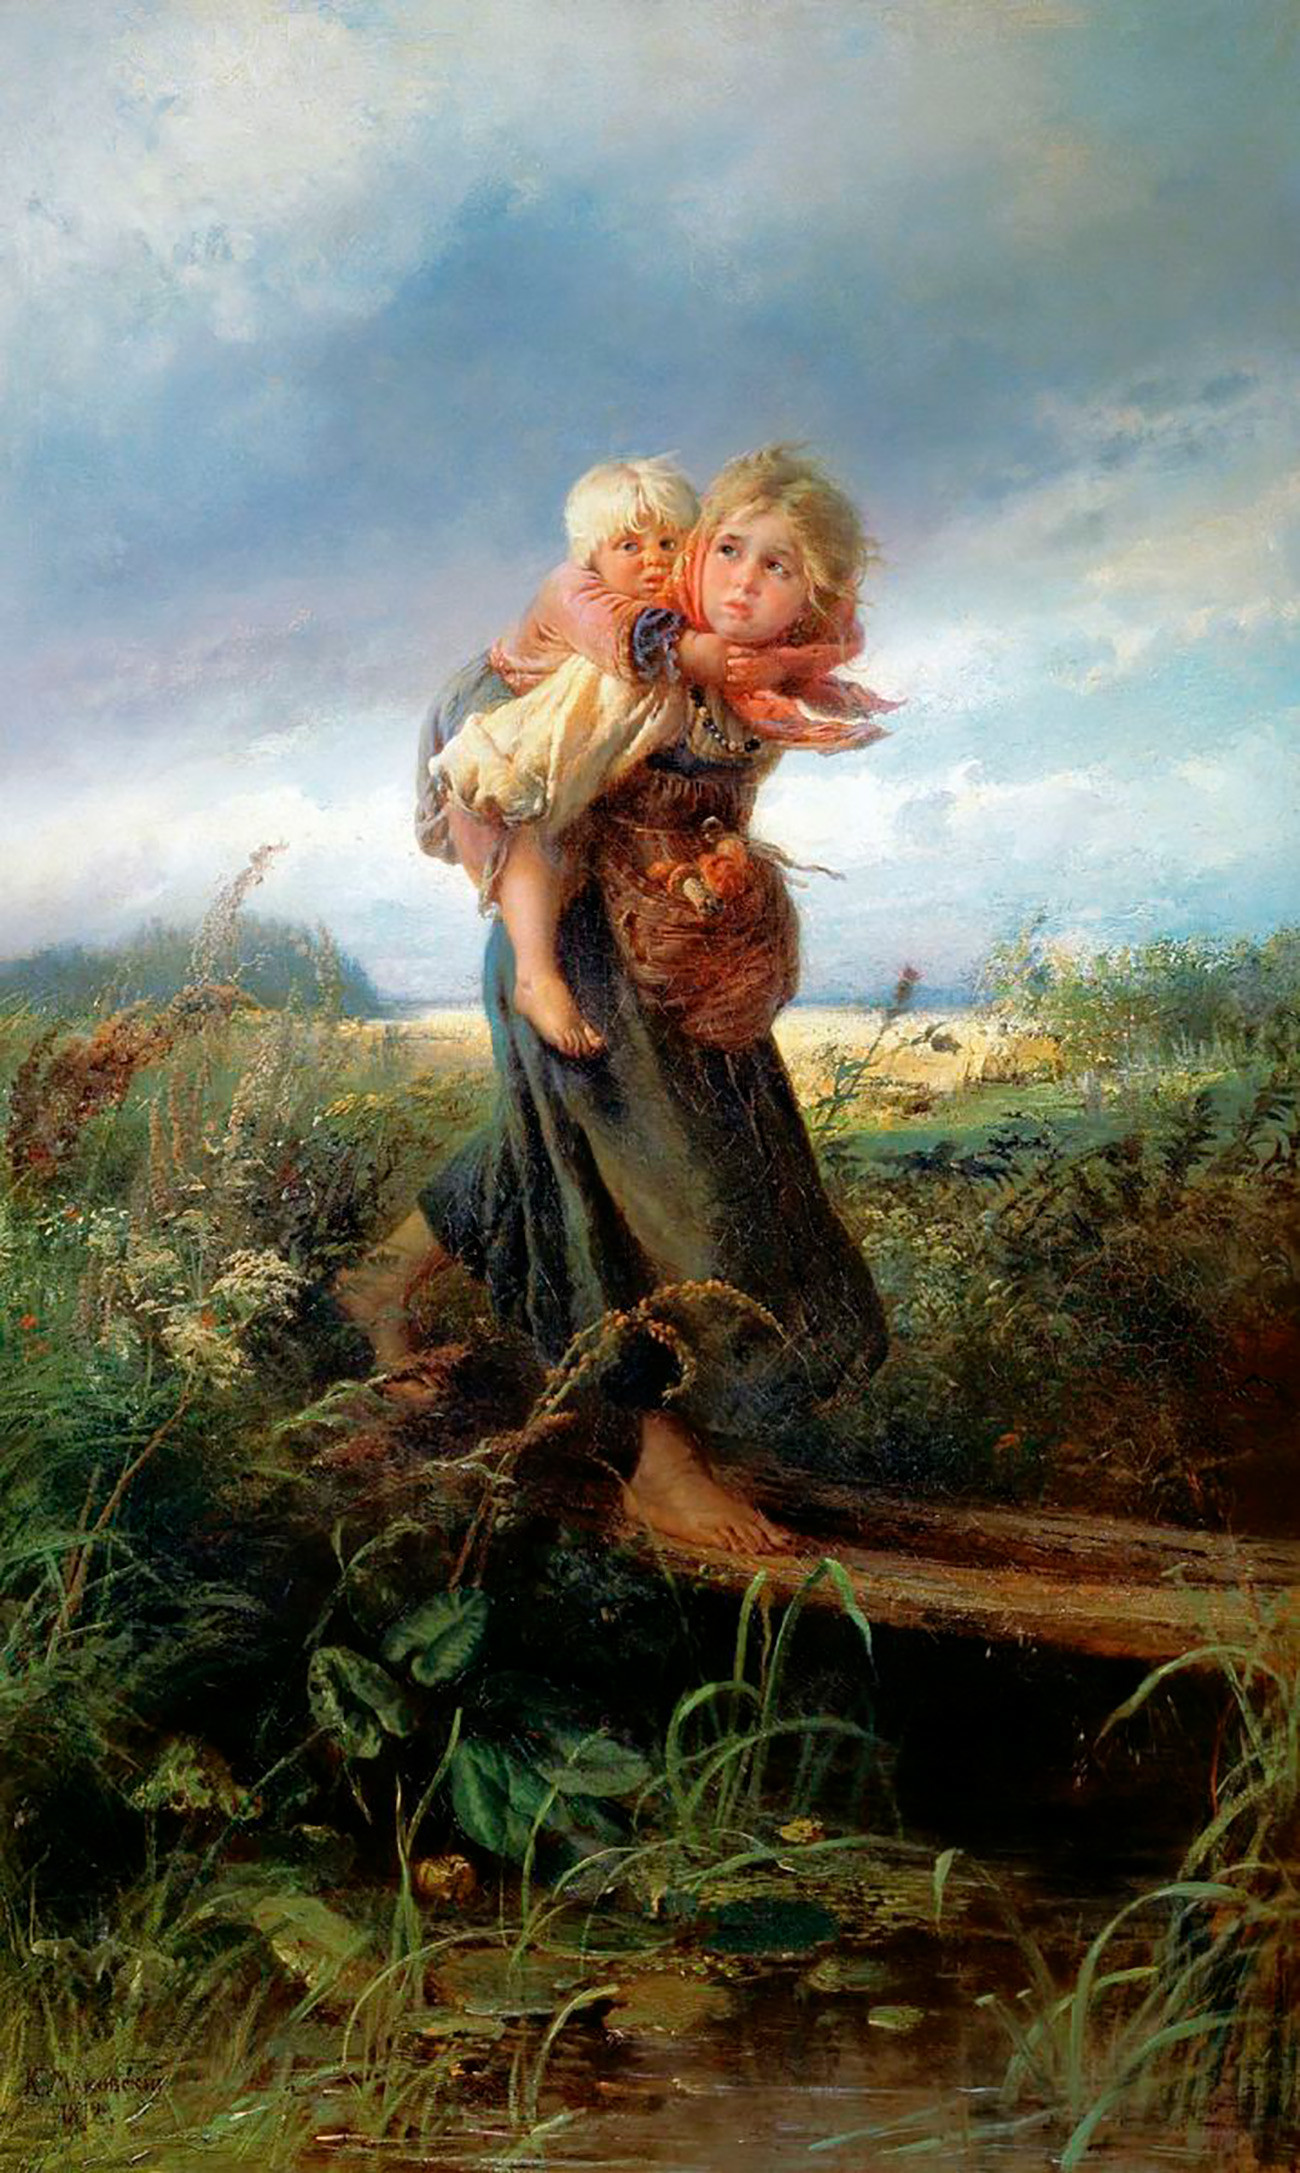 『嵐から逃げる子供たち』コンスタンチン・マコフスキー画